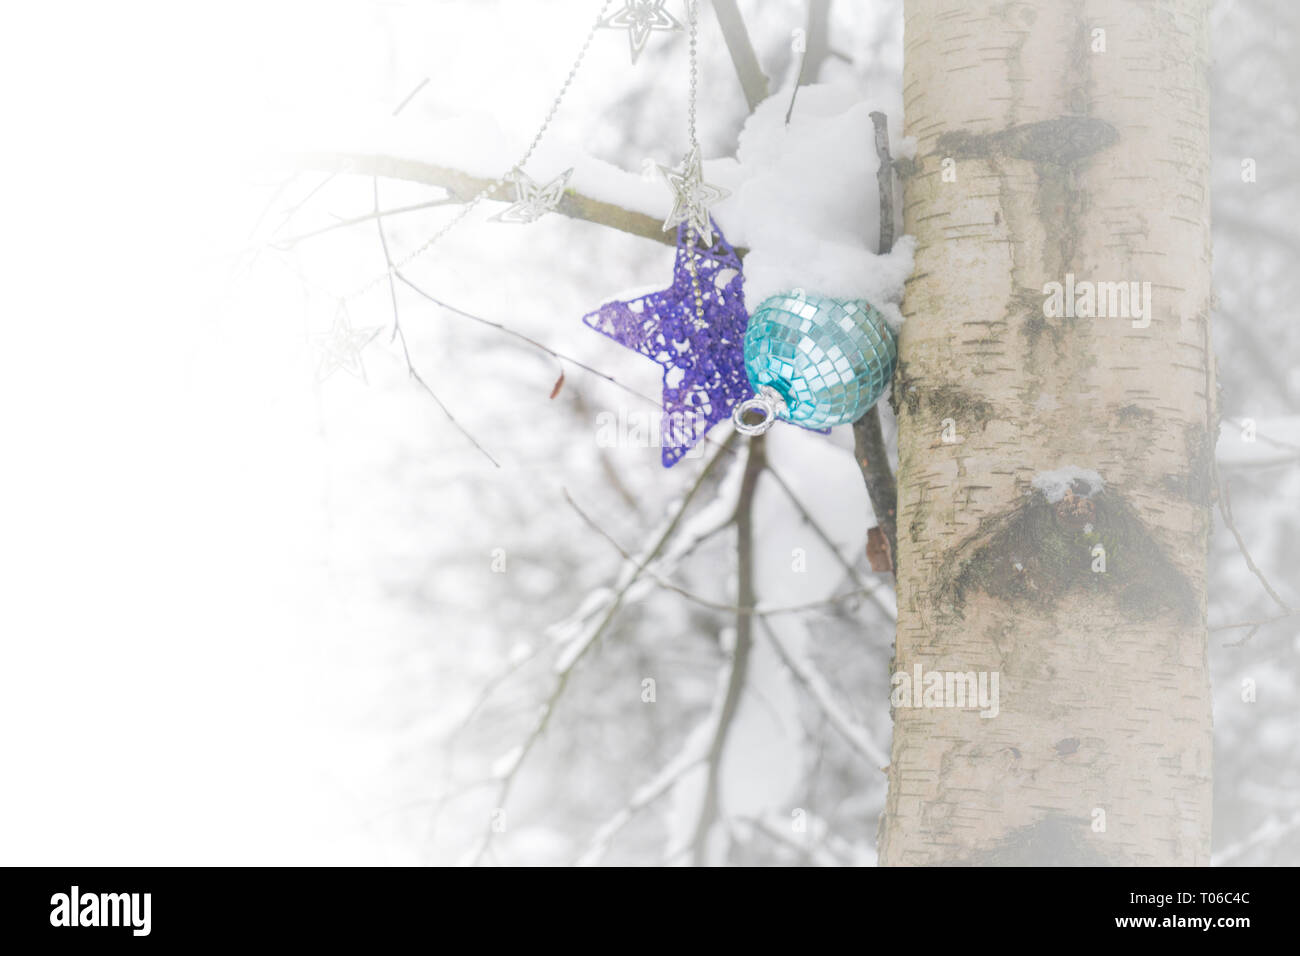 Addobbi natale appeso a un albero in un bosco innevato dopo una tempesta di neve, raffiguranti, inverno freddo, Natale, vacanze e l'inverno. Foto Stock